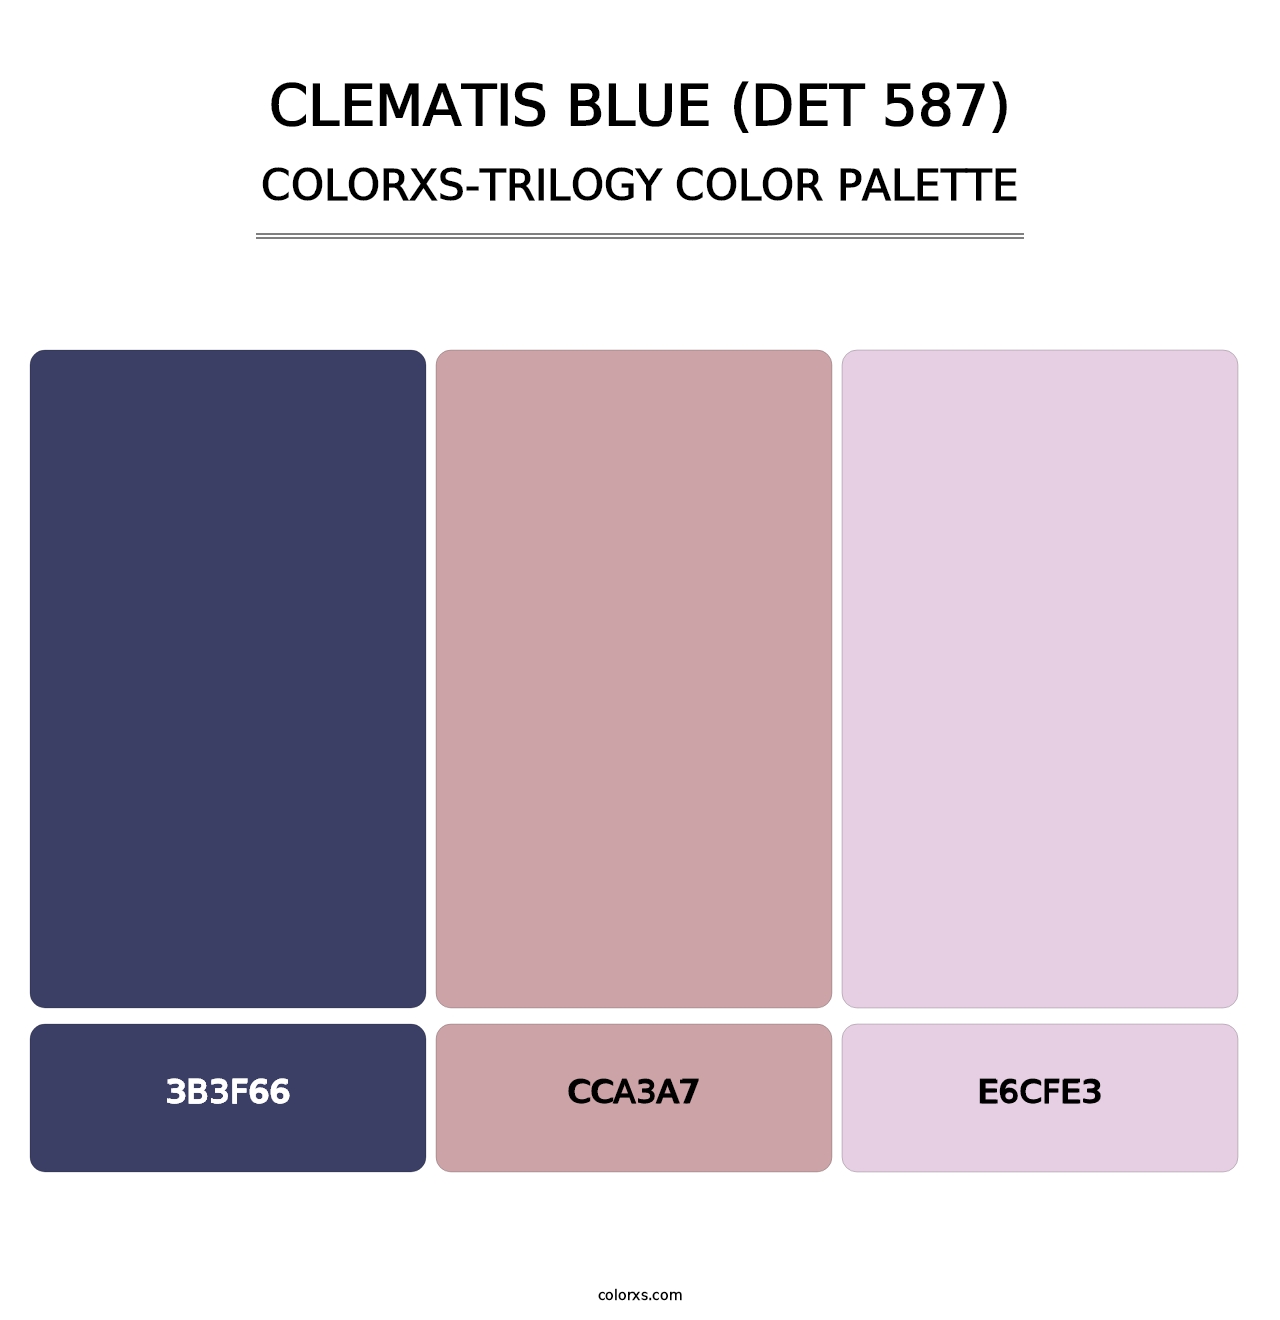 Clematis Blue (DET 587) - Colorxs Trilogy Palette